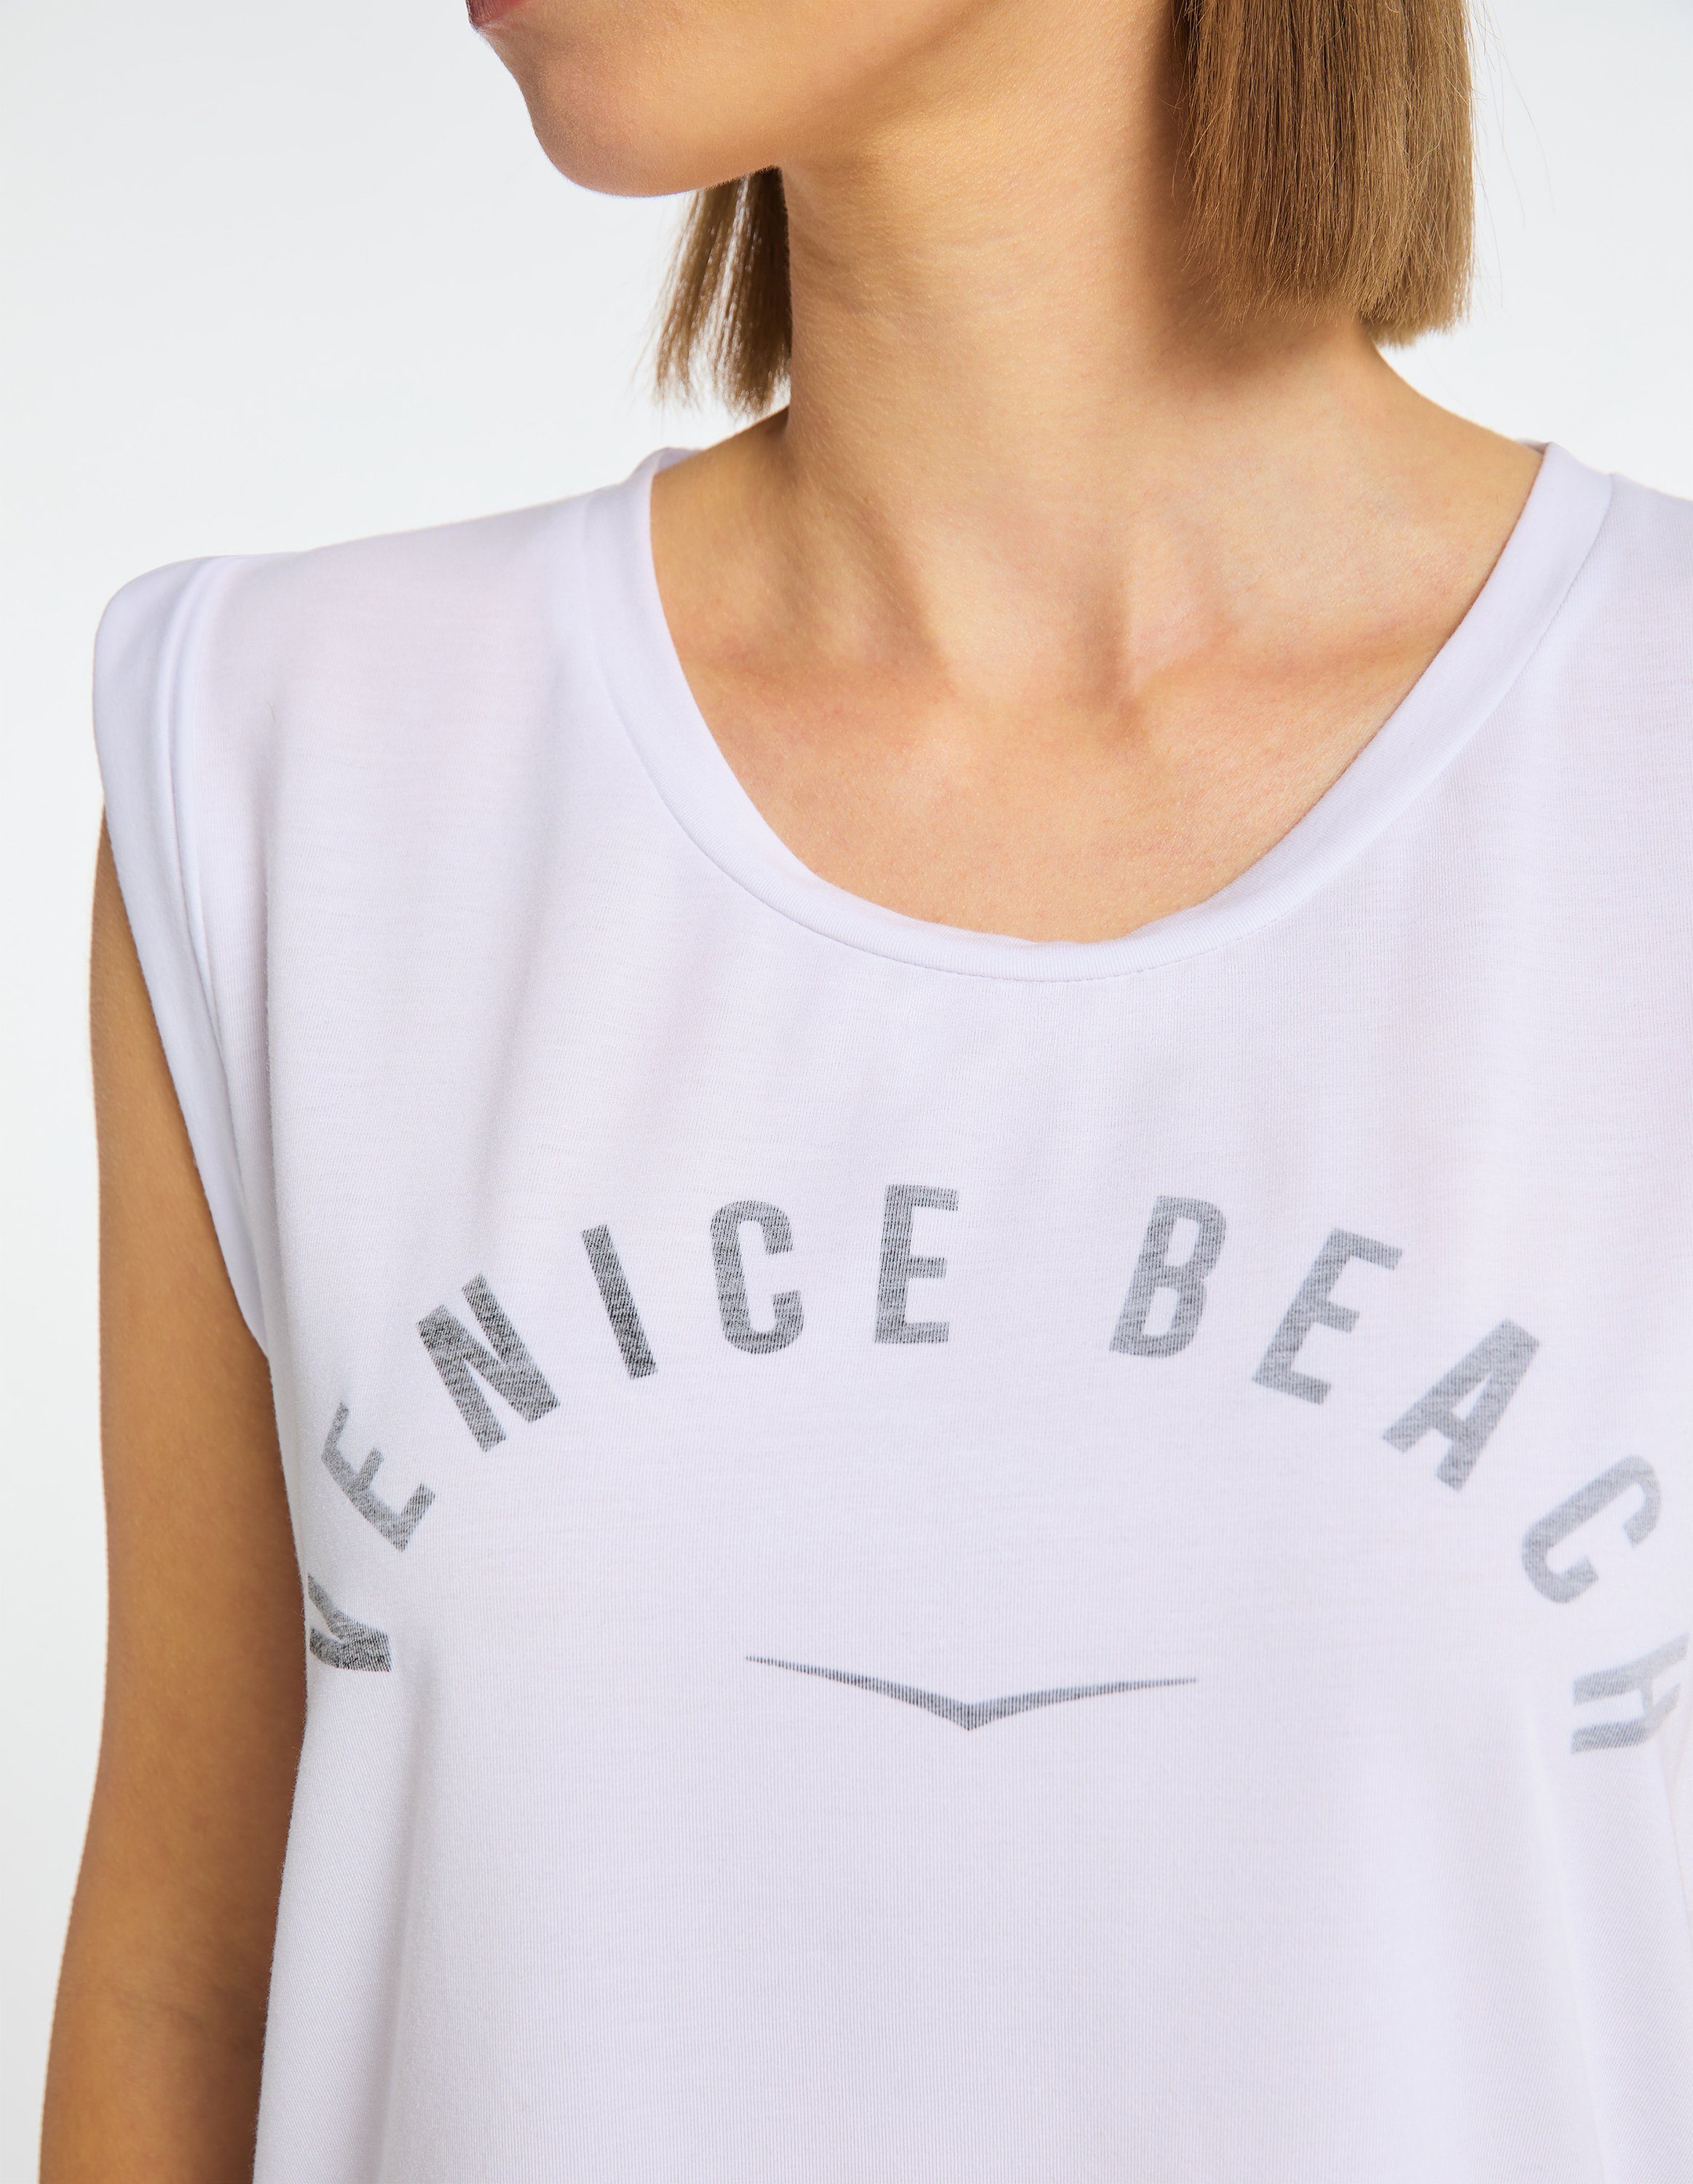 Beach T-Shirt T-Shirt Chayanne Venice white VB